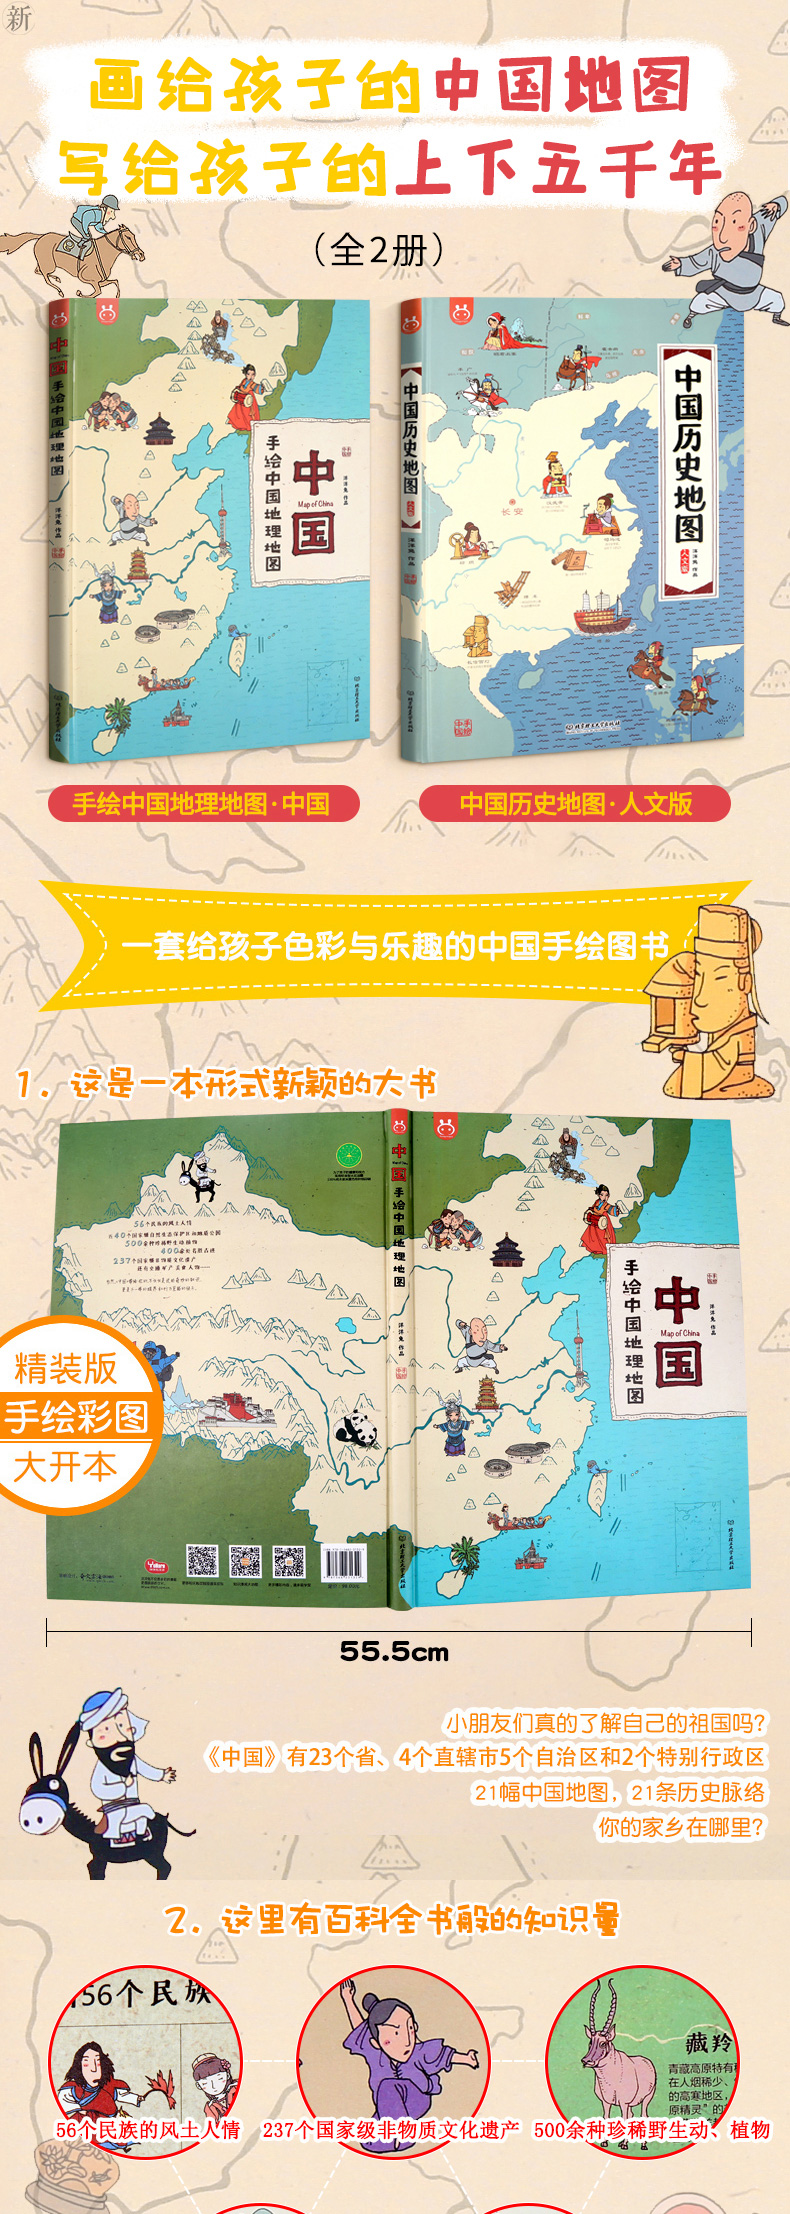 中国历史地图_手绘中国人文版.pdf下载